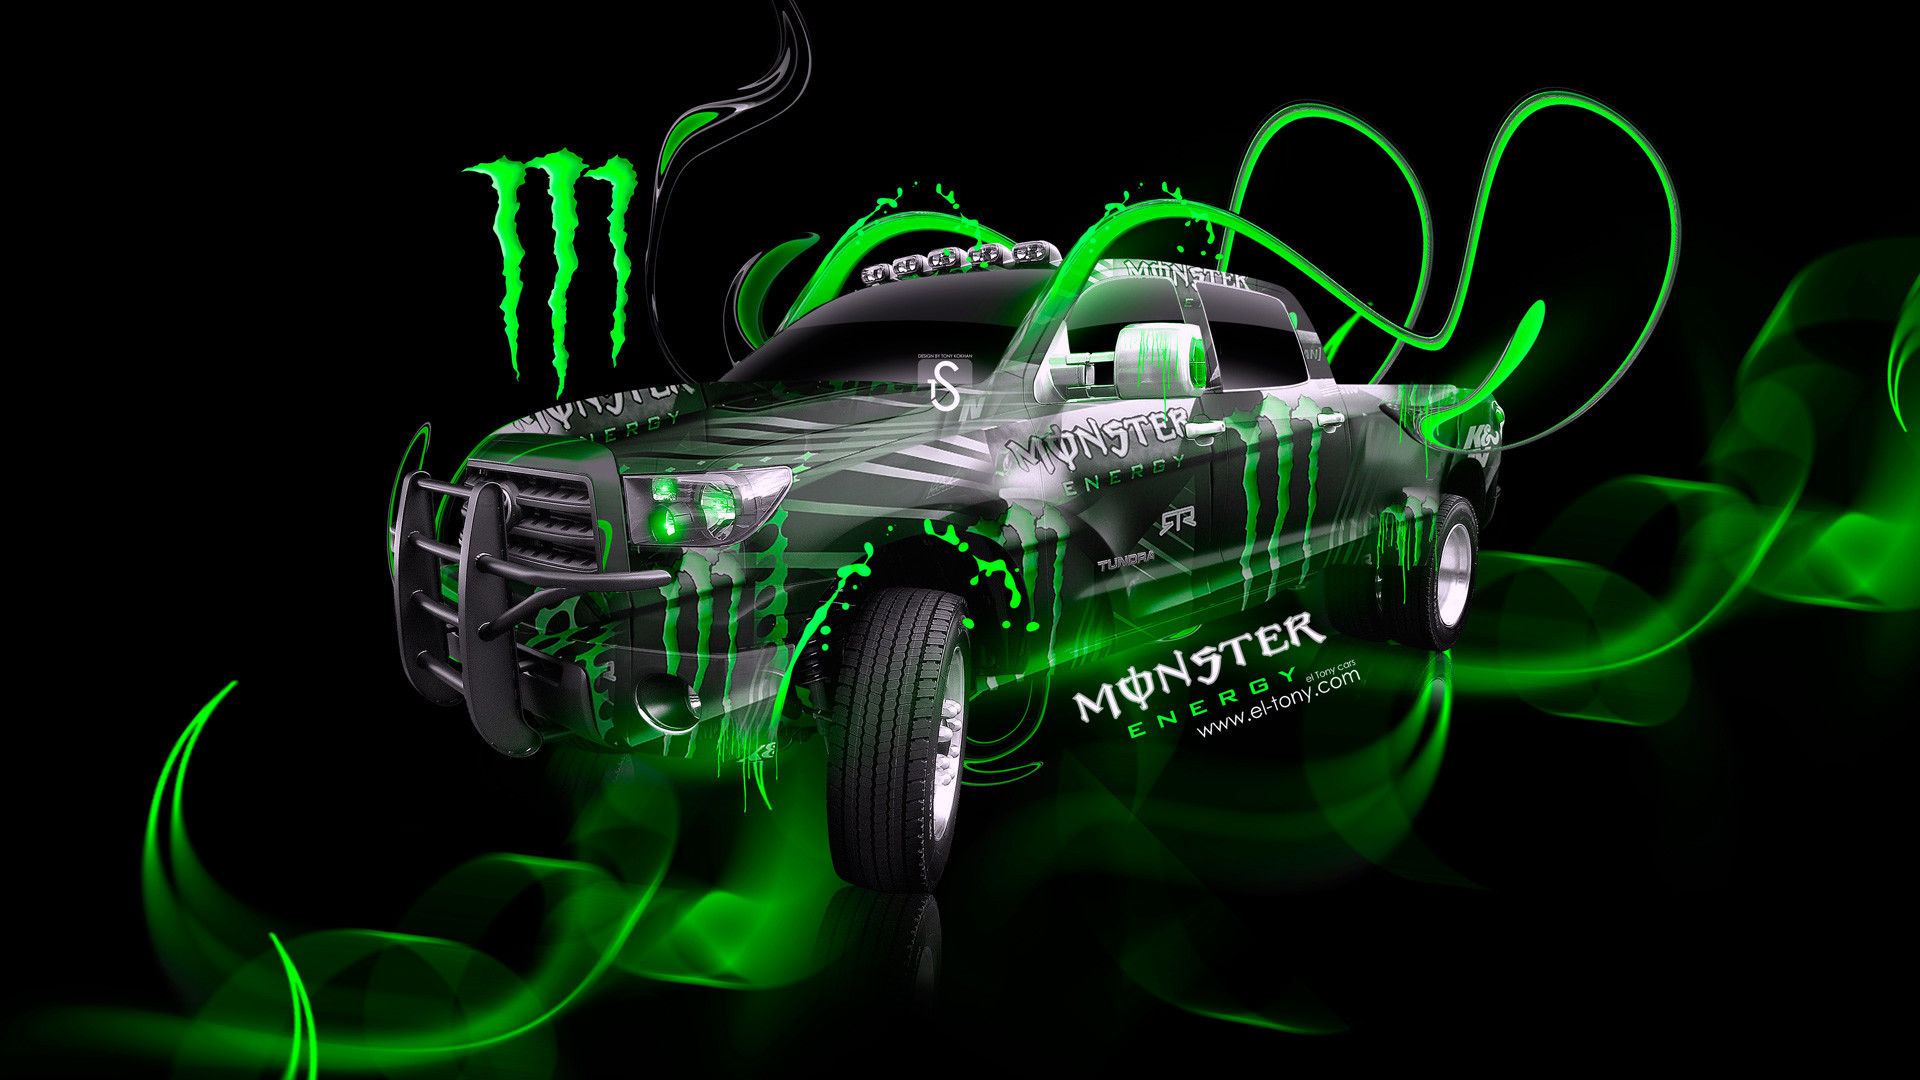 1920x1080 2015 monster energy toyota altezza jdm plastic car 2014 monster energy .